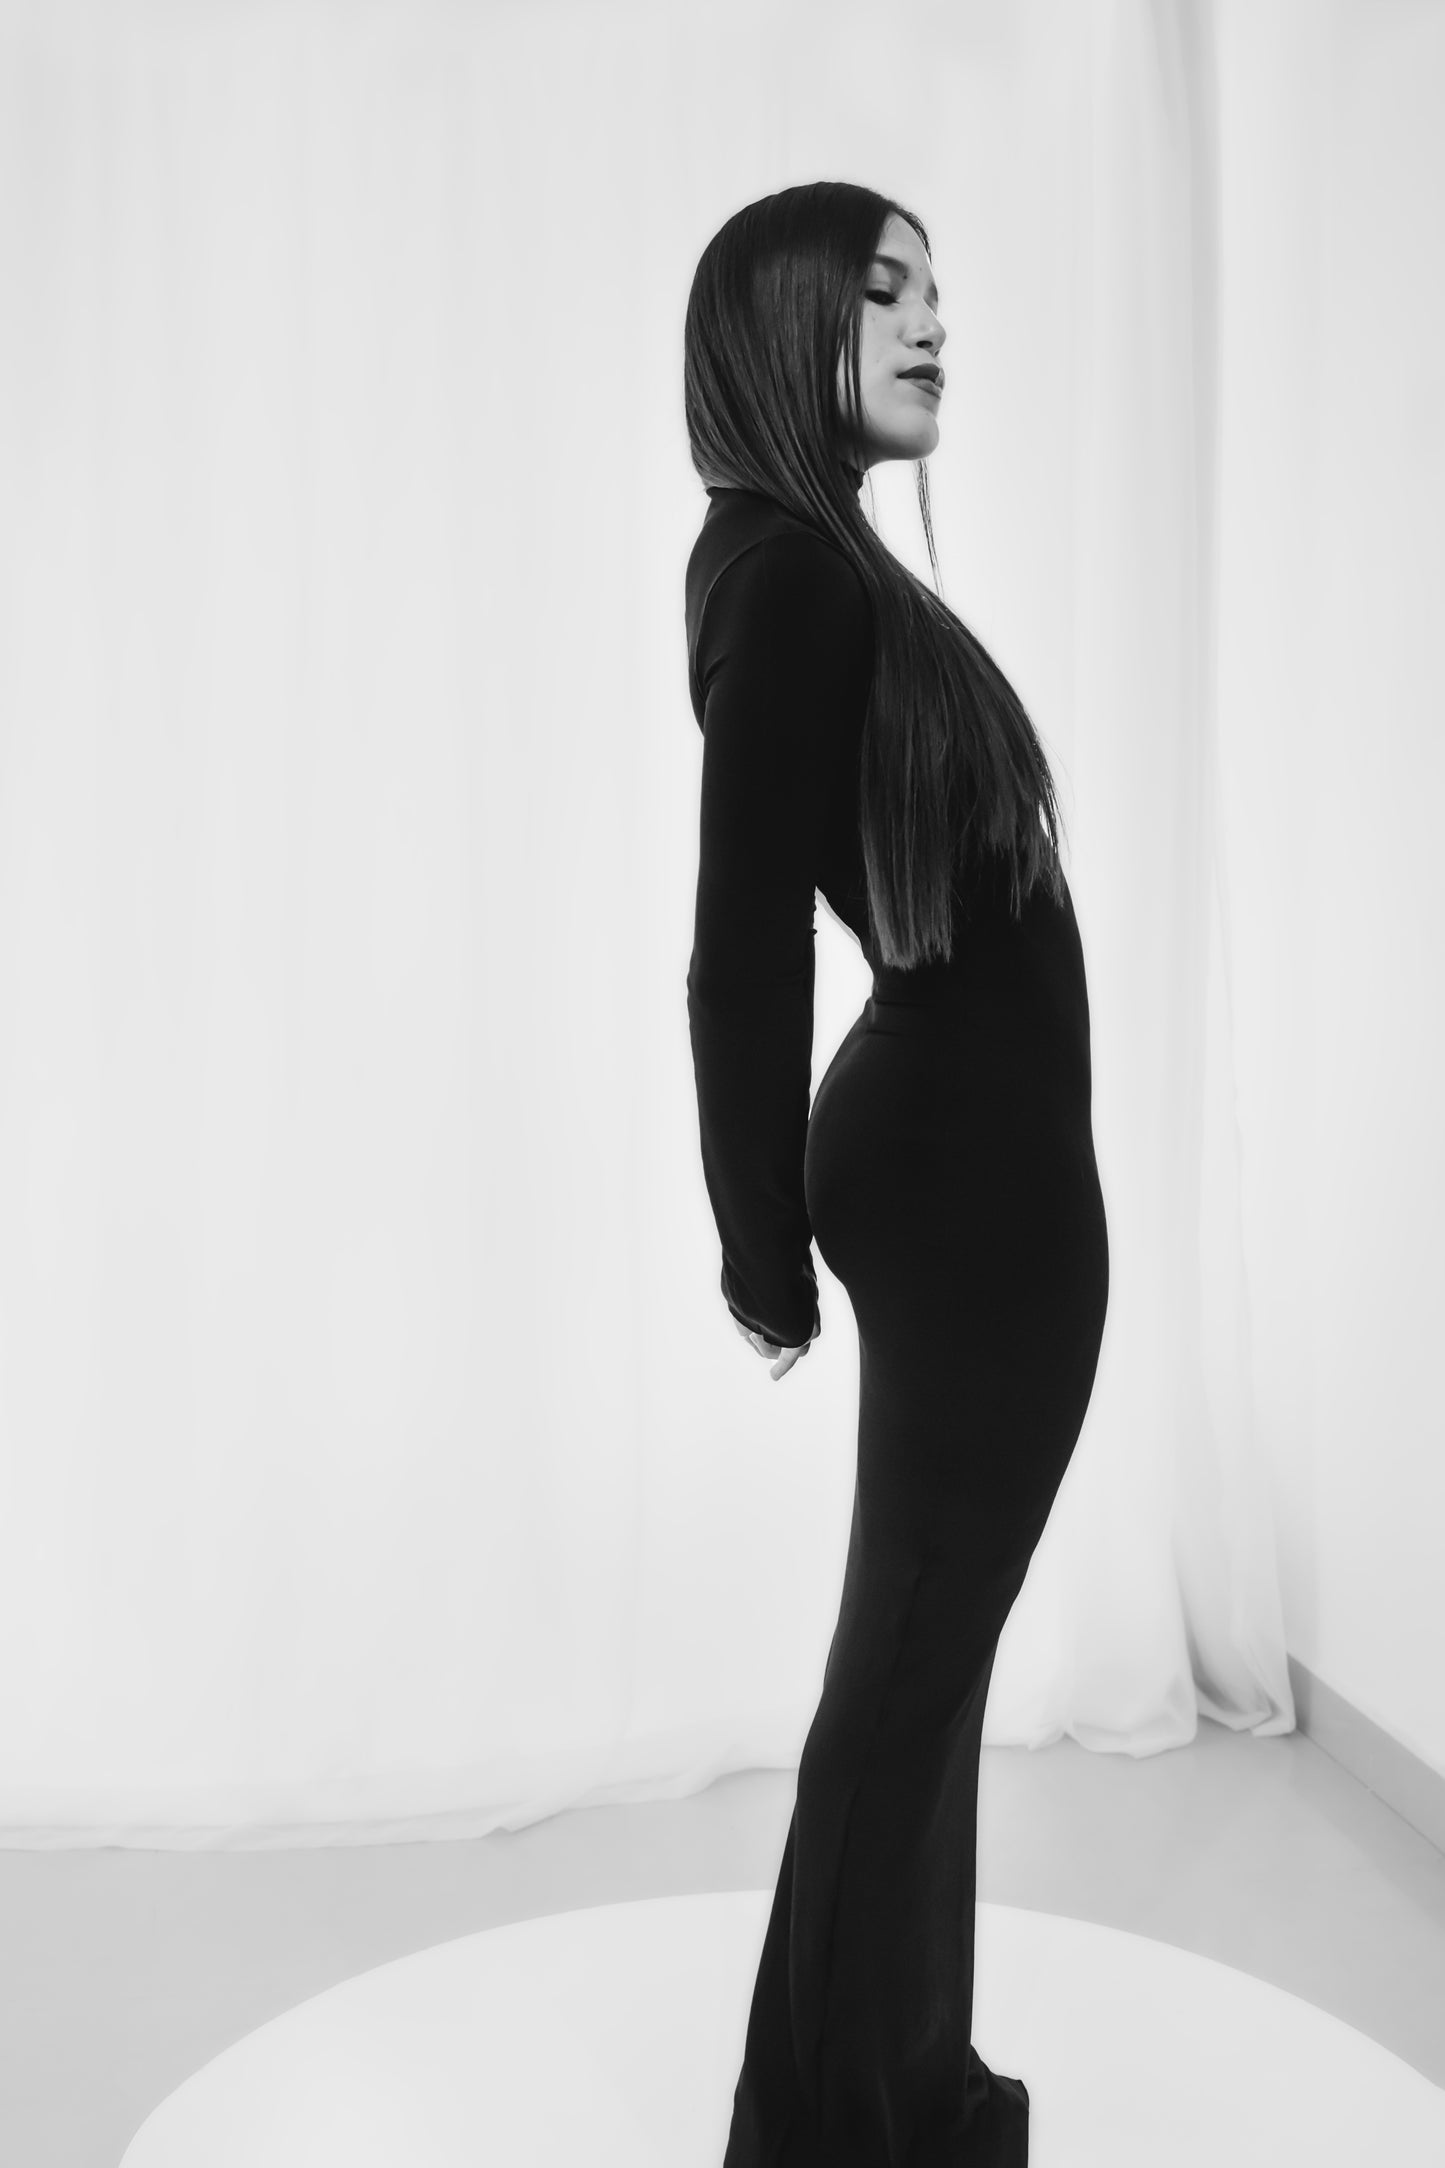 Una imagen monocromática de una mujer parada de perfil usando un vestido negro ajustado con mangas largas y dobladillo hasta el suelo. La persona tiene el pelo largo y liso y posa sobre un fondo blanco.